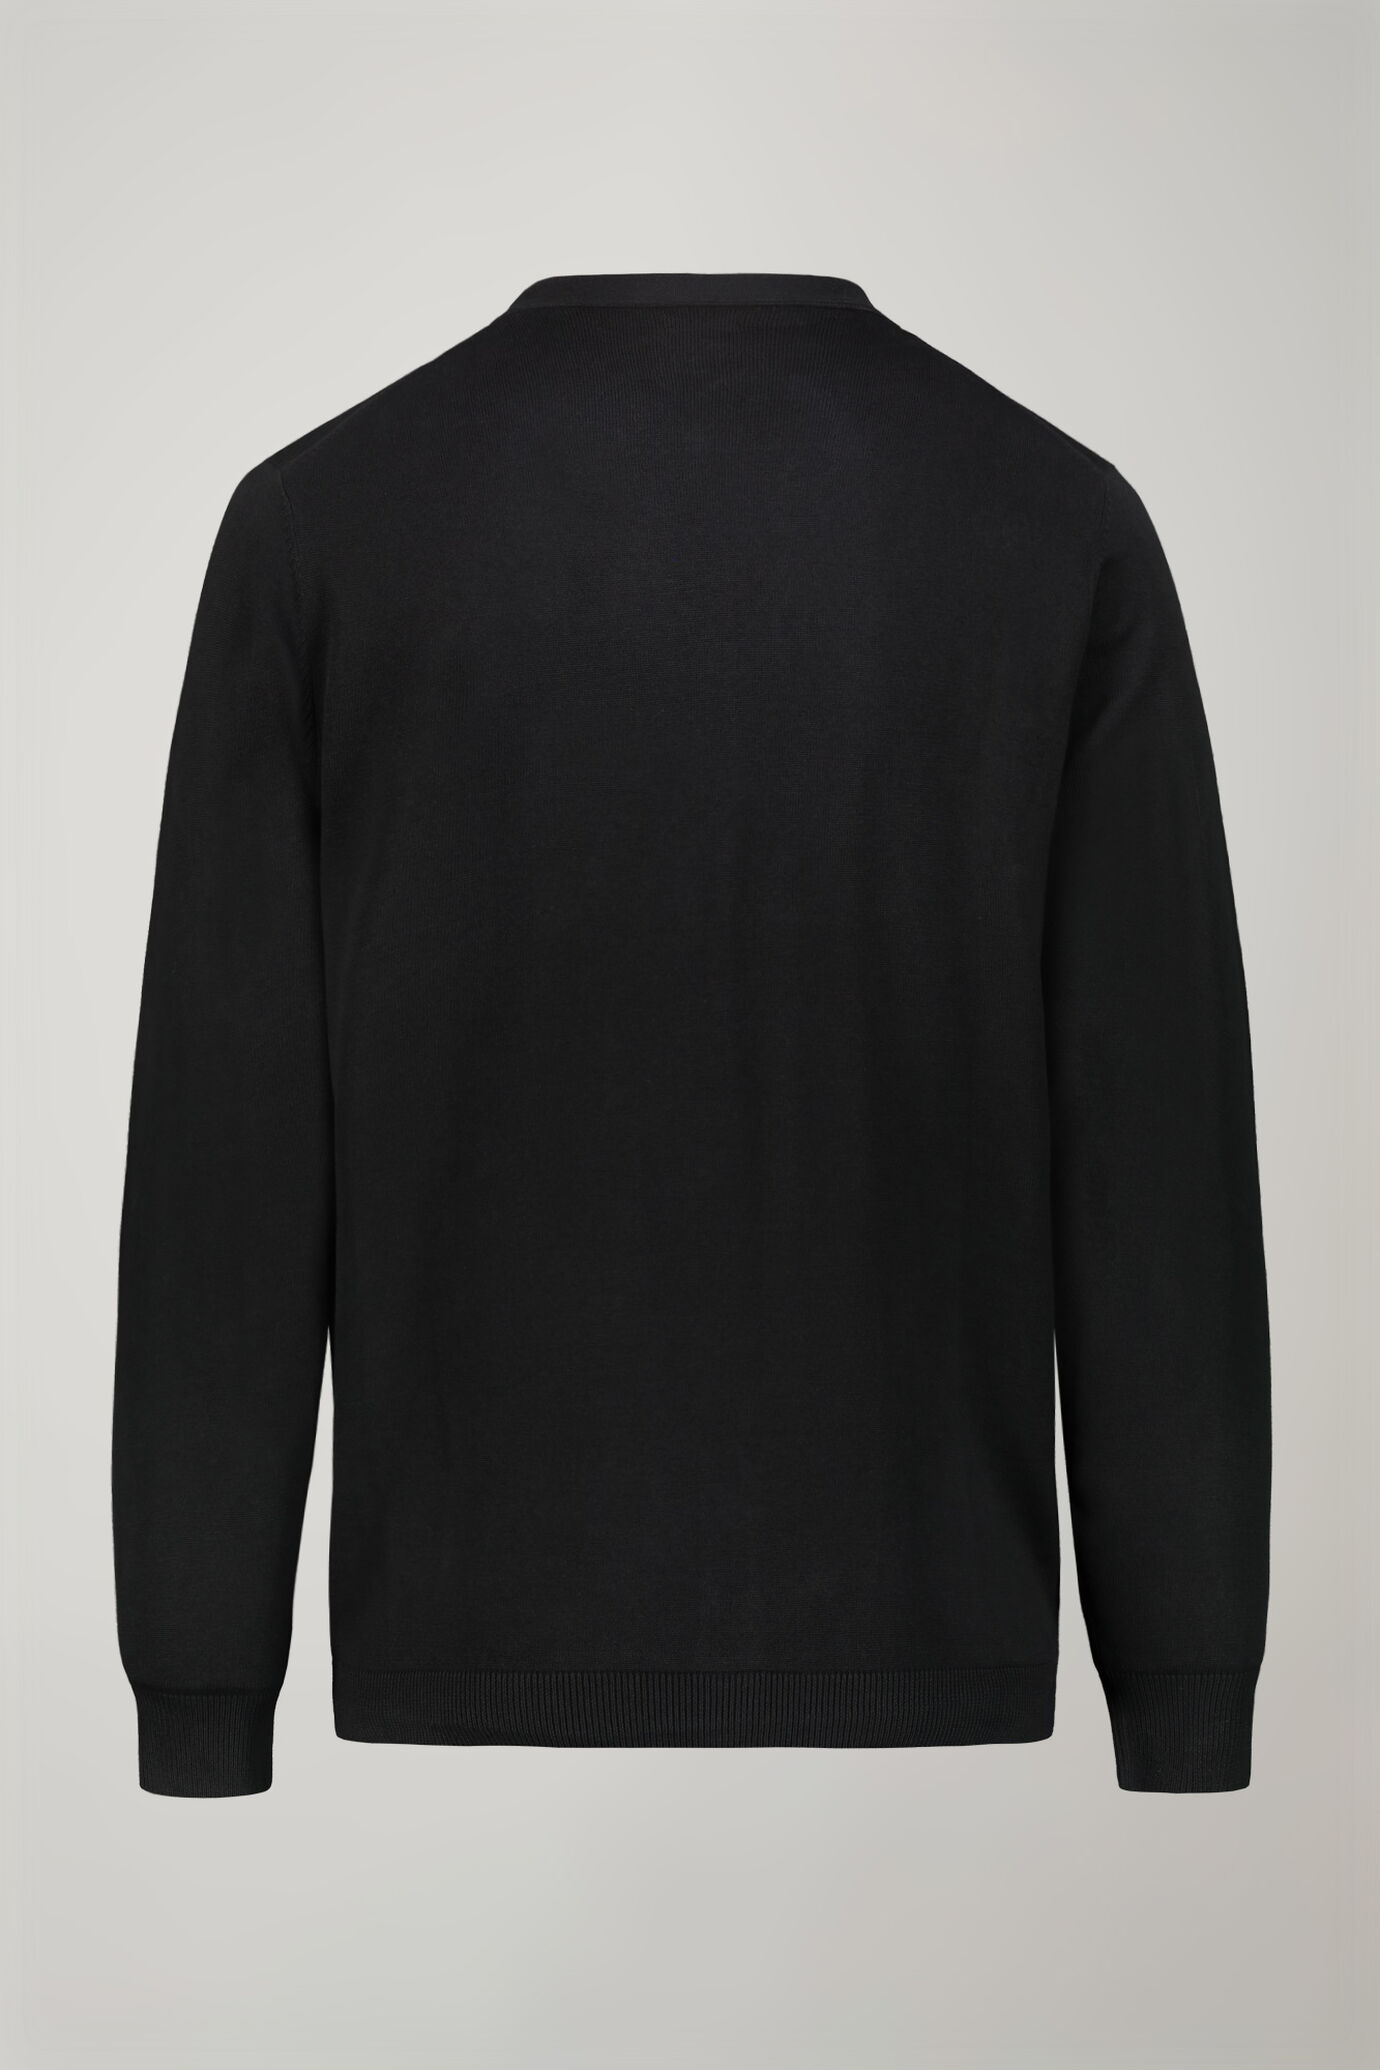 Men's sweater V collar 100% cotton regular fit image number 5